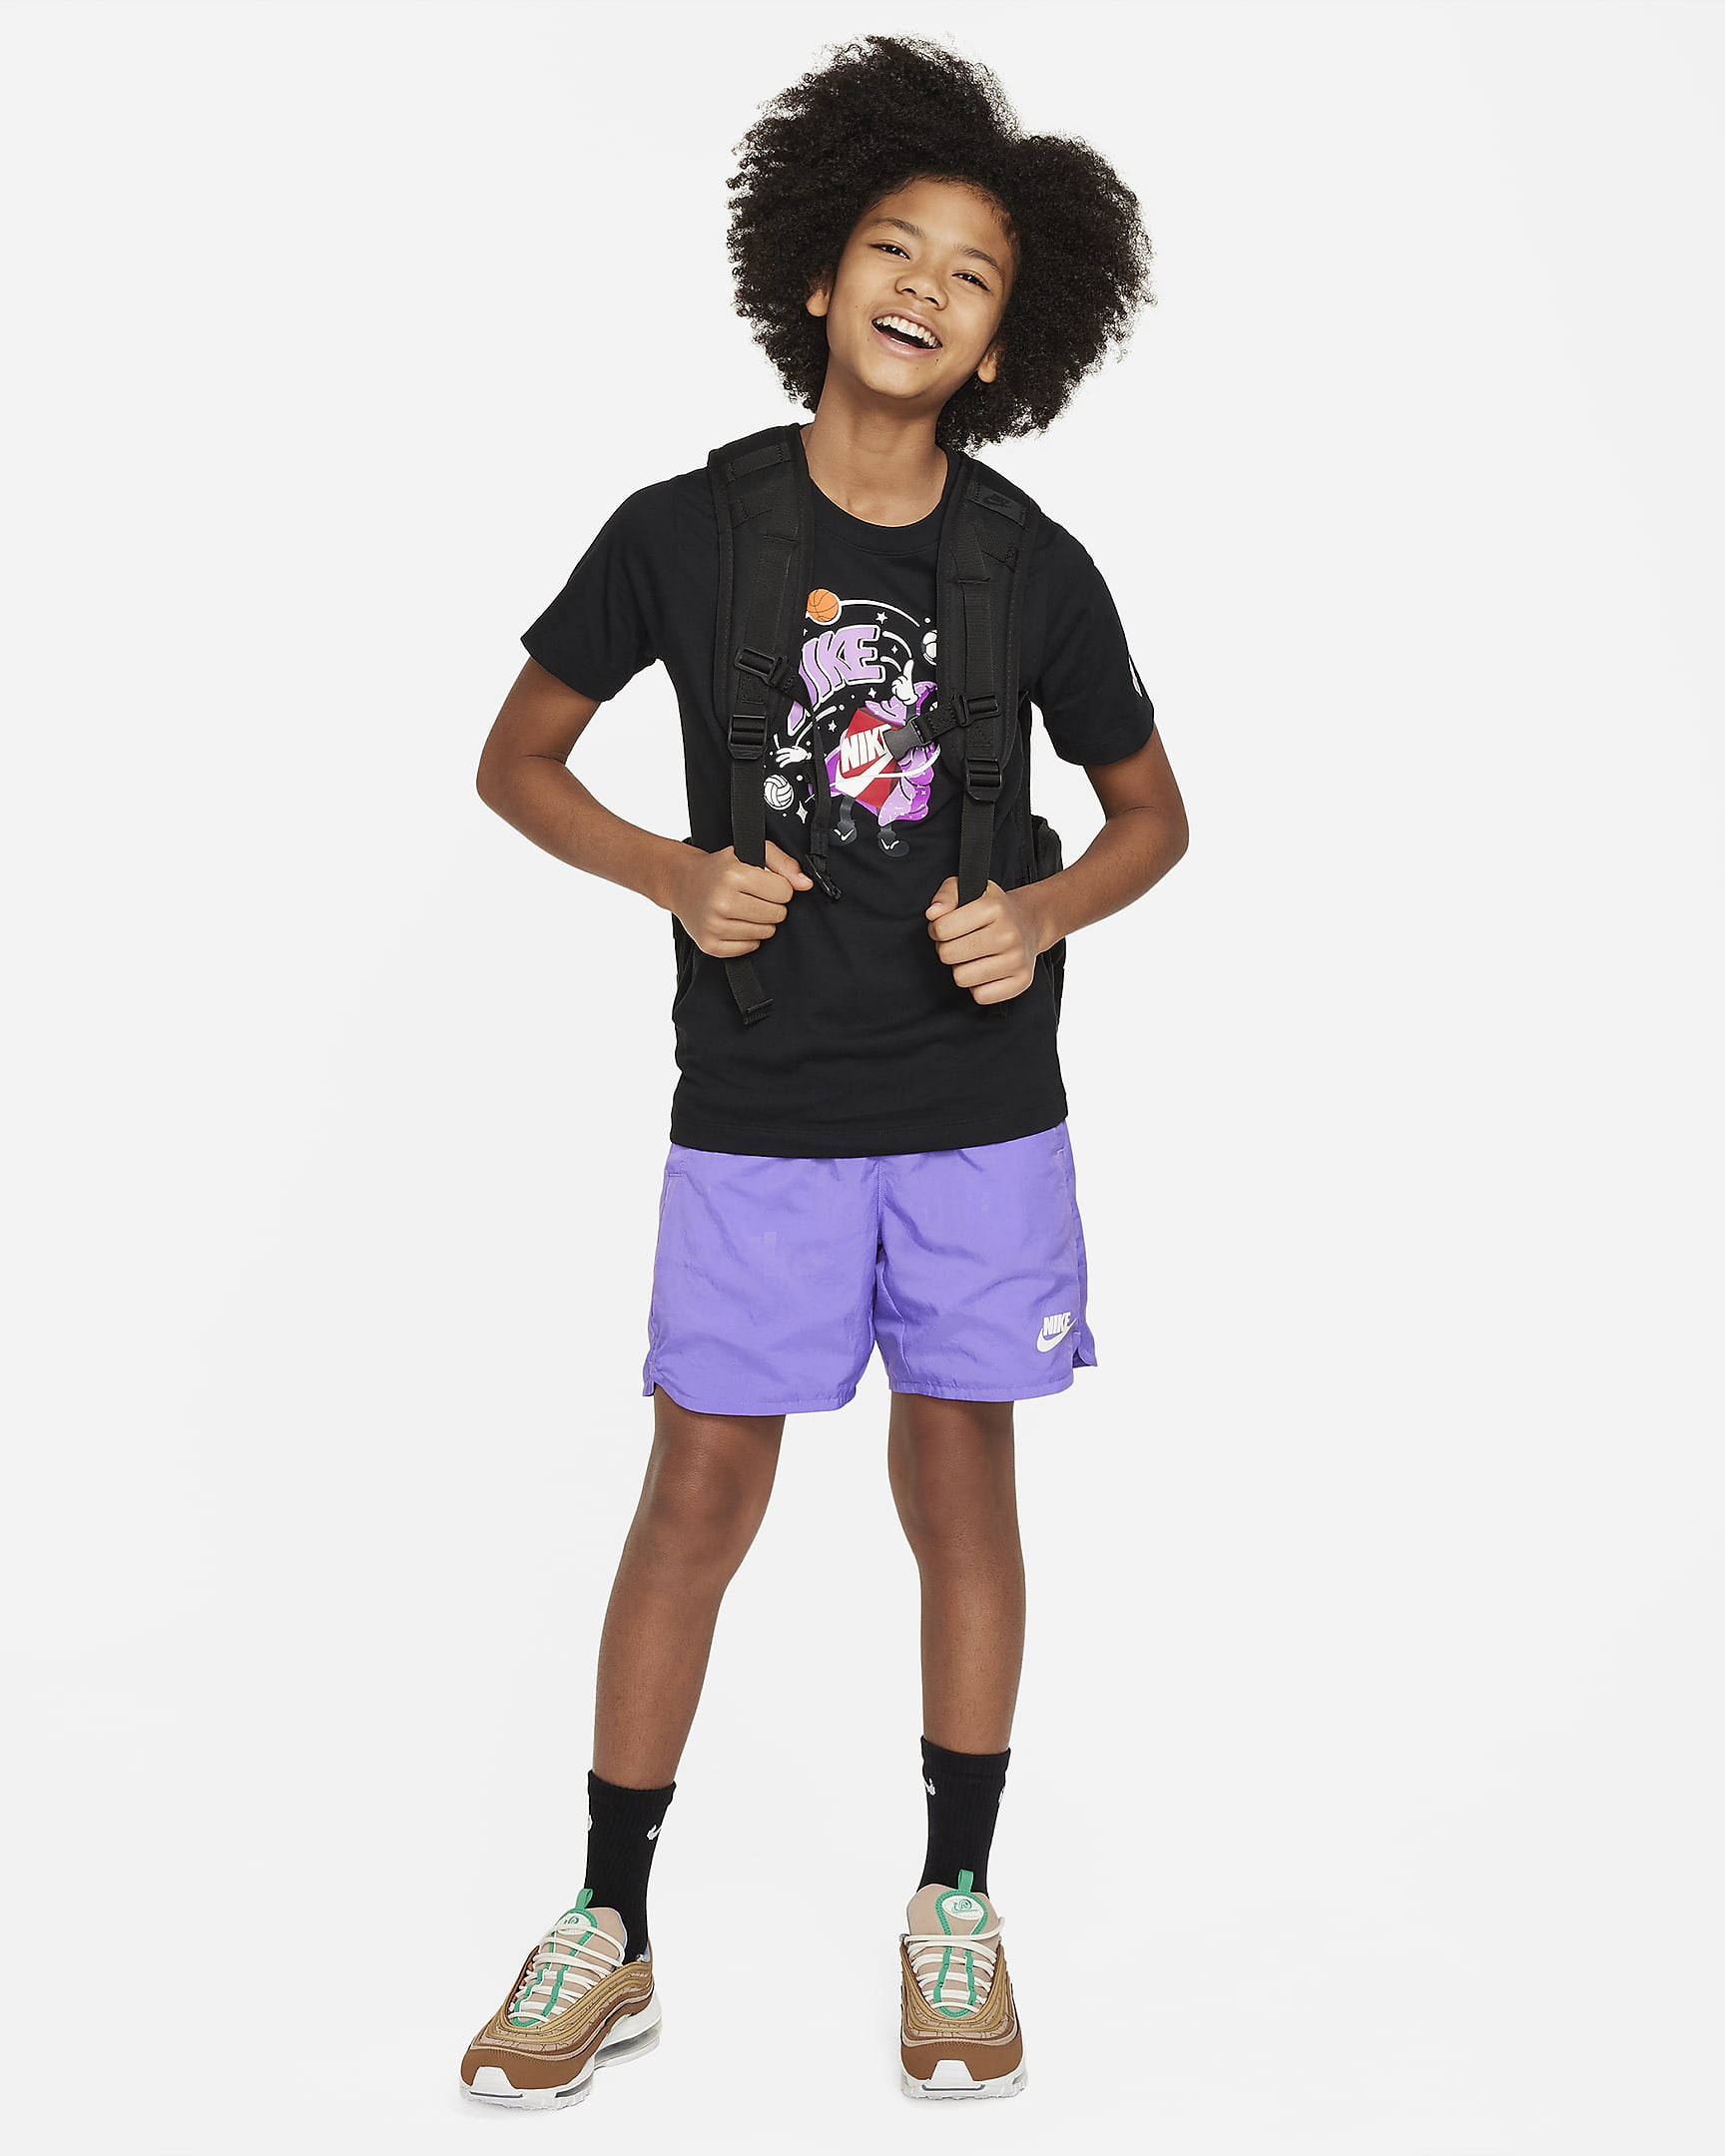 Nike Sportswear Older Kids' T-Shirt. Nike IN